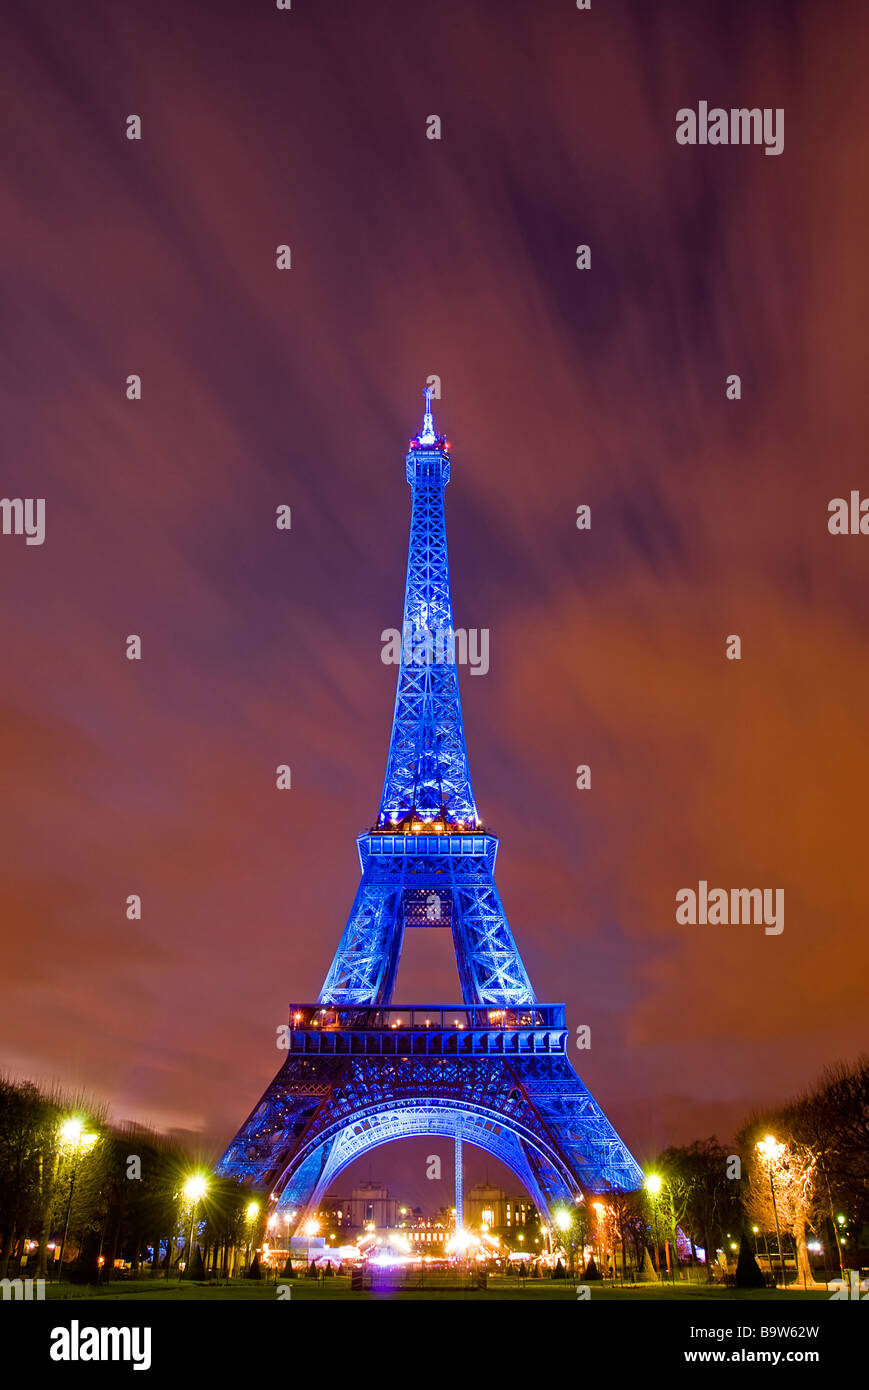 Vista della Torre Eiffel illuminata in blu la visualizzazione del simbolo europeo a causa della presidenza francese dell' Unione europea Foto Stock